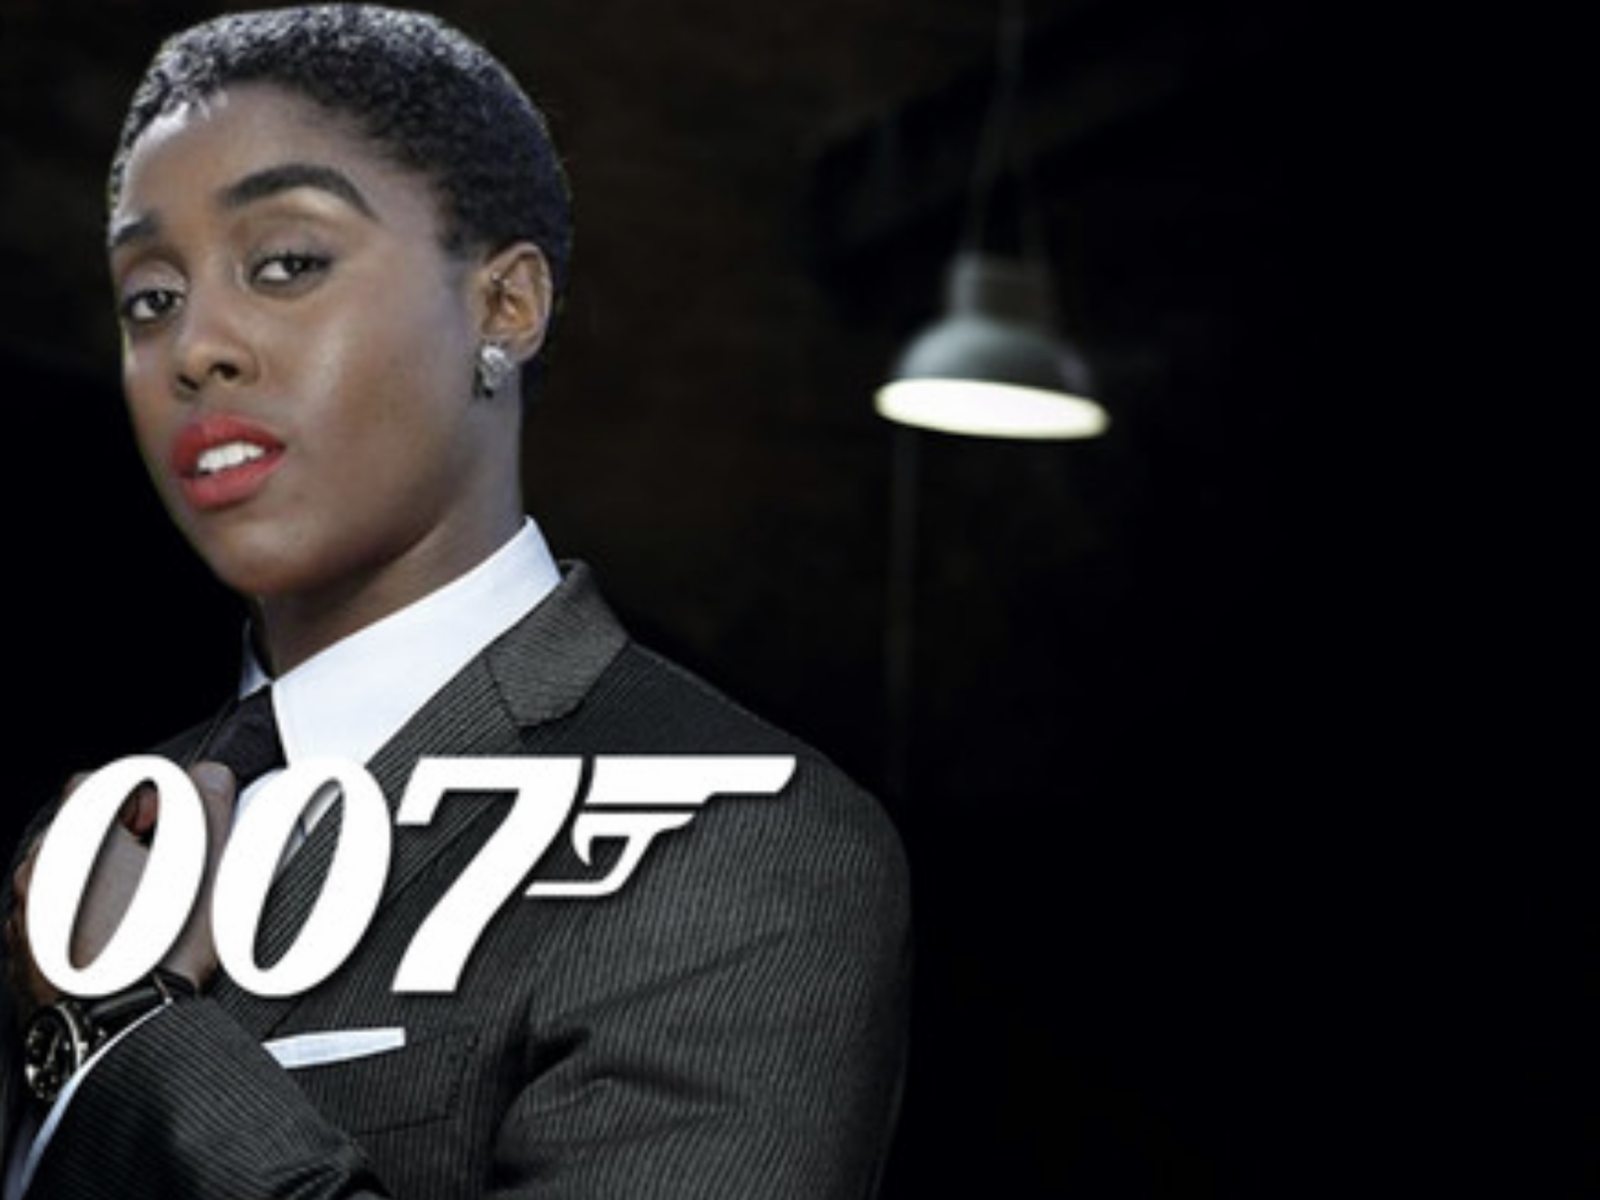 Умерла негритянка. Лашана Линч 007 агент. Лашана Линч новый агент 007. Новый агент 007 женщина.